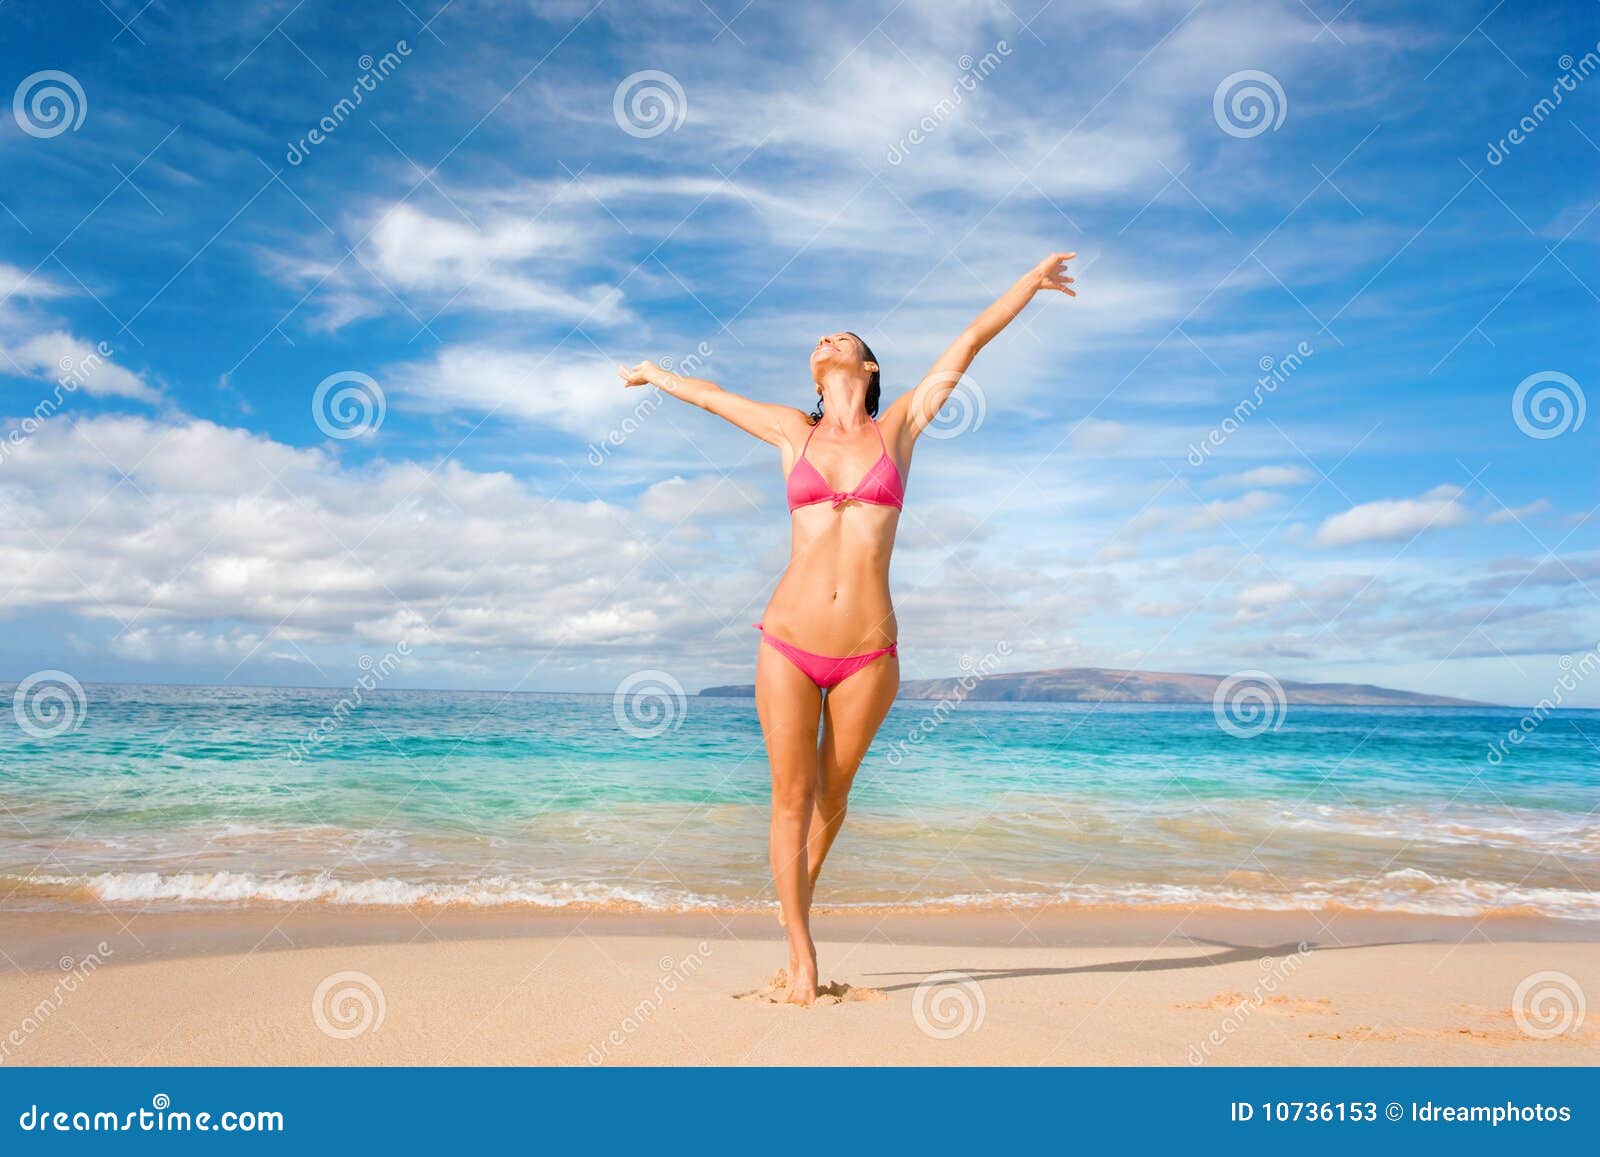 Strandspiel. Schöne exotische Frau im rosafarbenen Bikini auf Strand